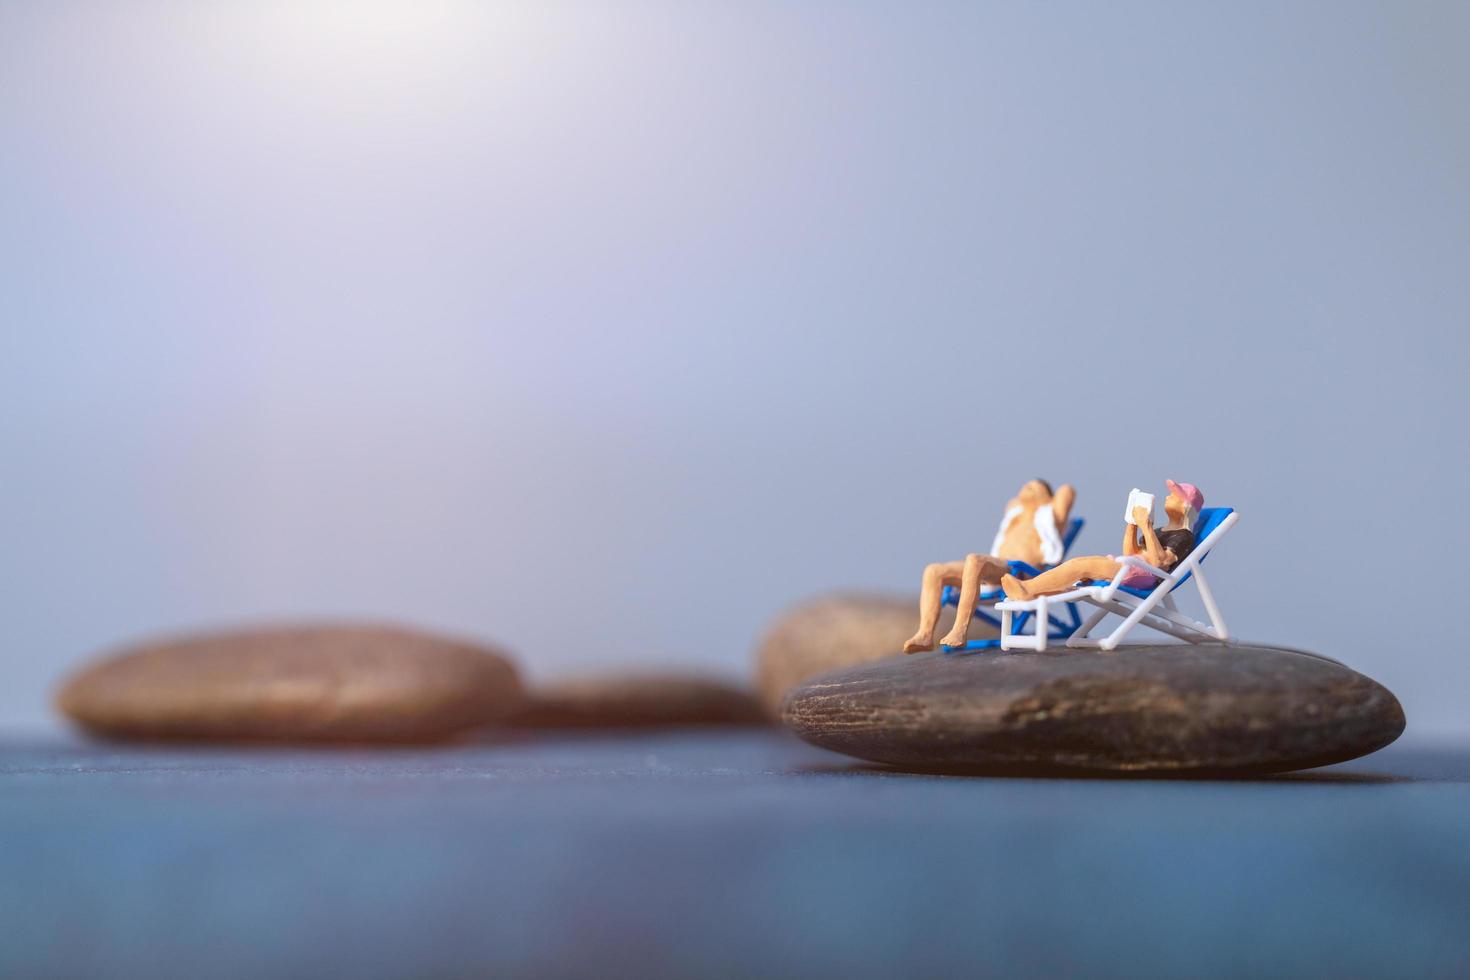 Gente en miniatura tomando el sol en una playa, concepto de verano foto